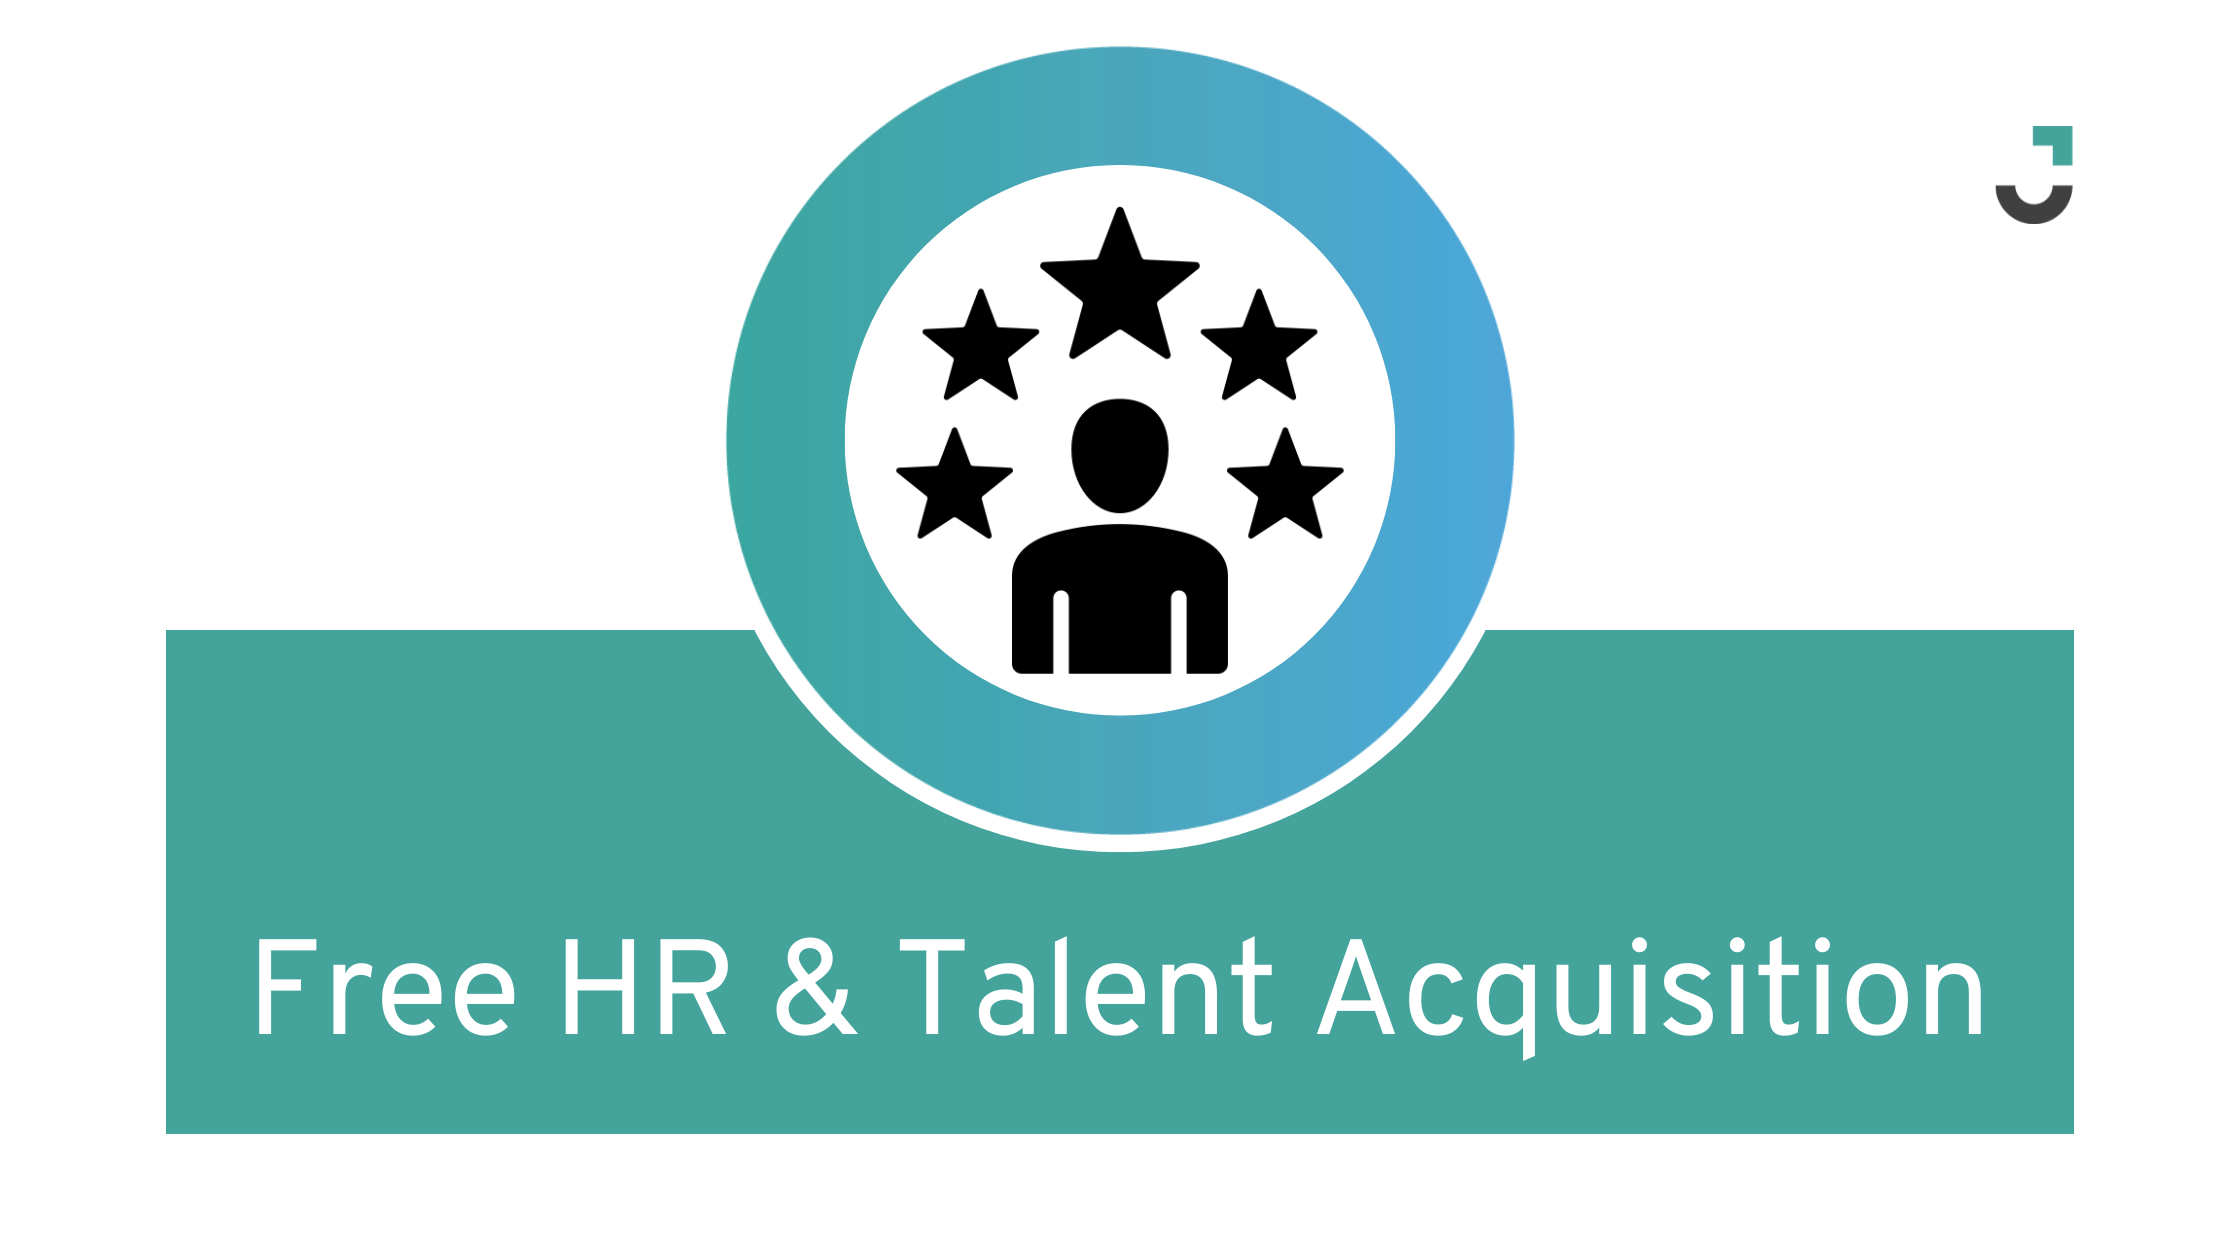 Free HR & Talent Acquisition